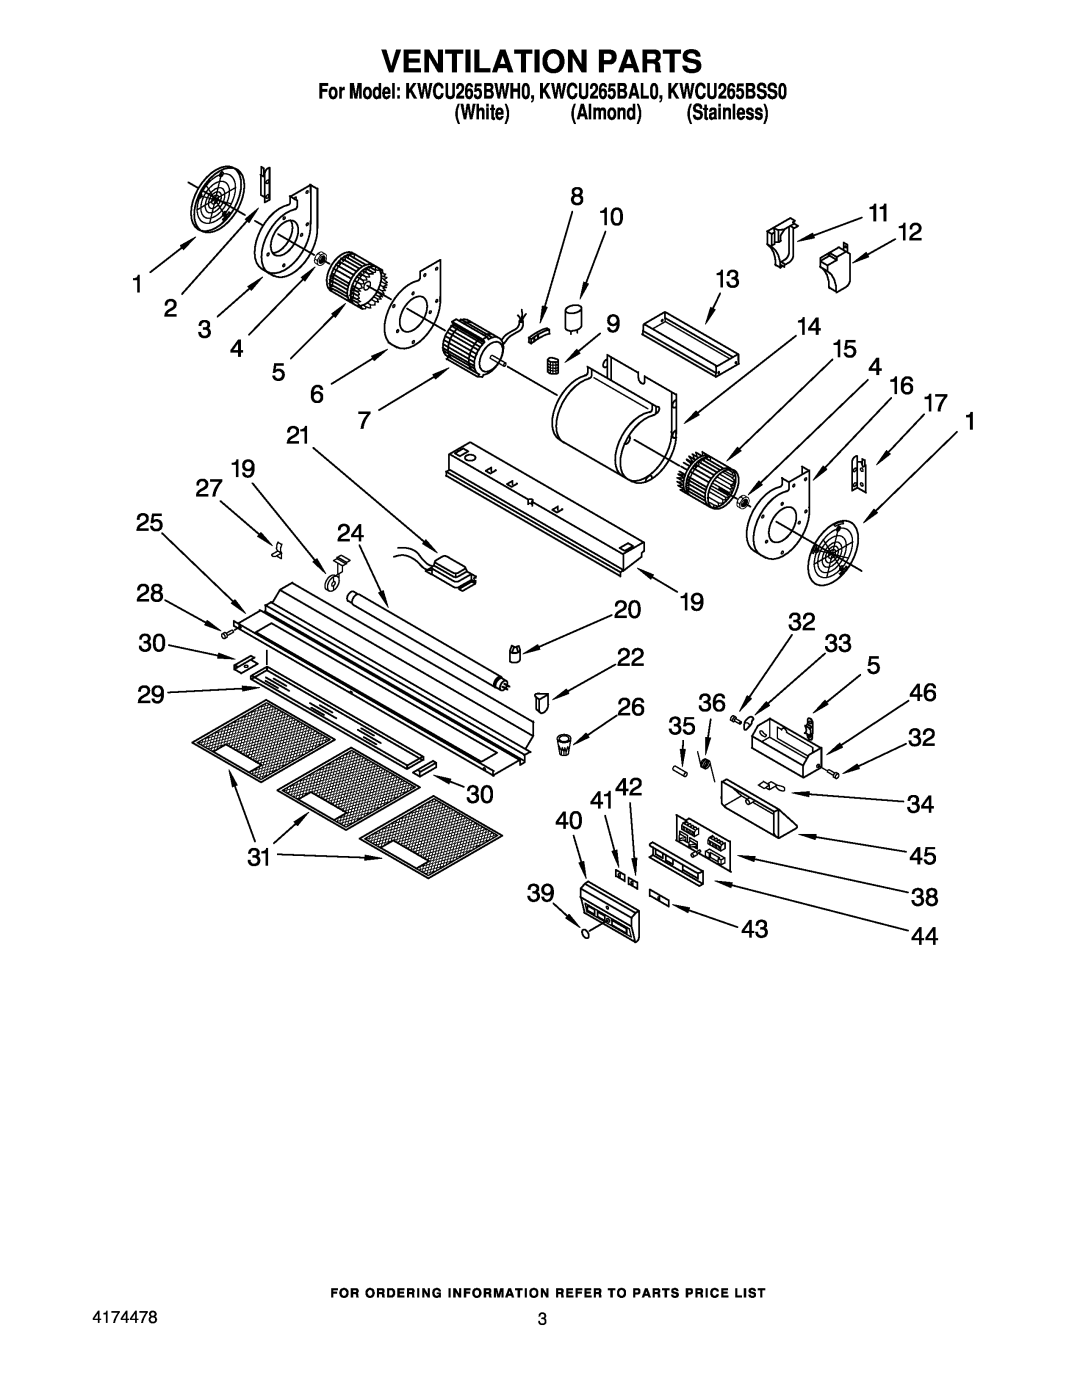 KitchenAid manual Ventilation Parts, For Model KWCU265BWH0, KWCU265BAL0, KWCU265BSS0, White Almond Stainless 